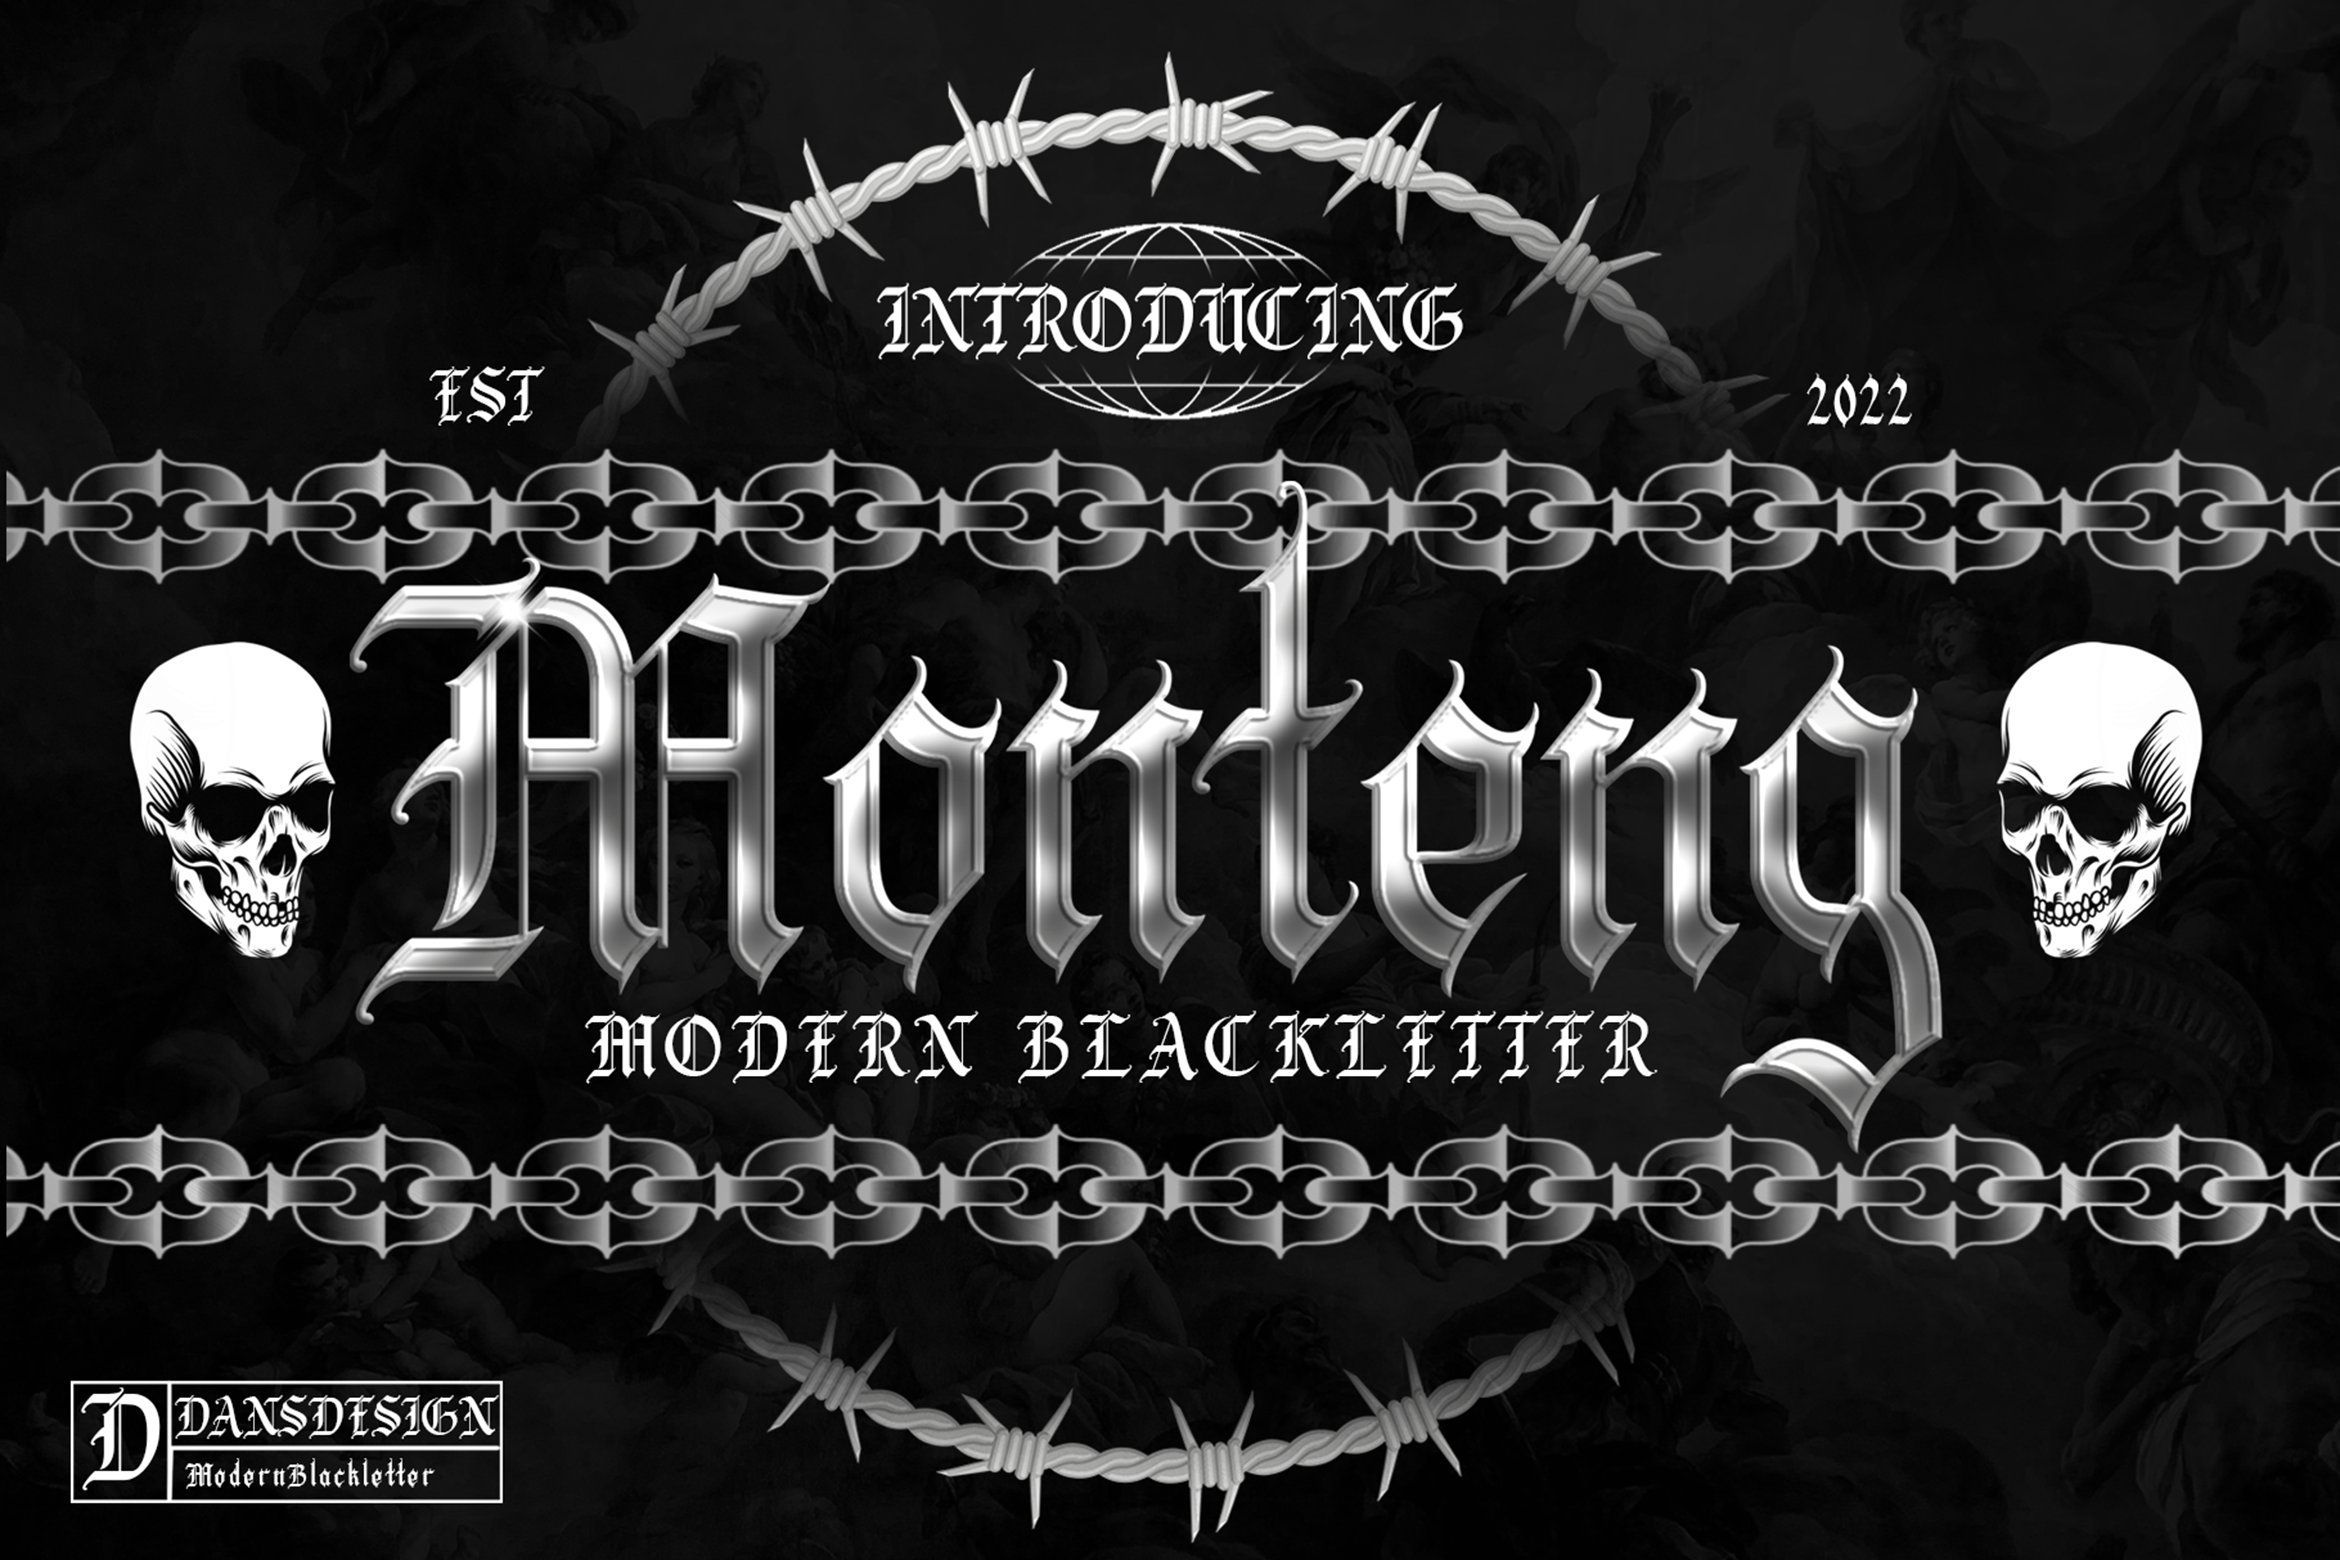 MONTENG MODERN BLACKLETTER cover image.